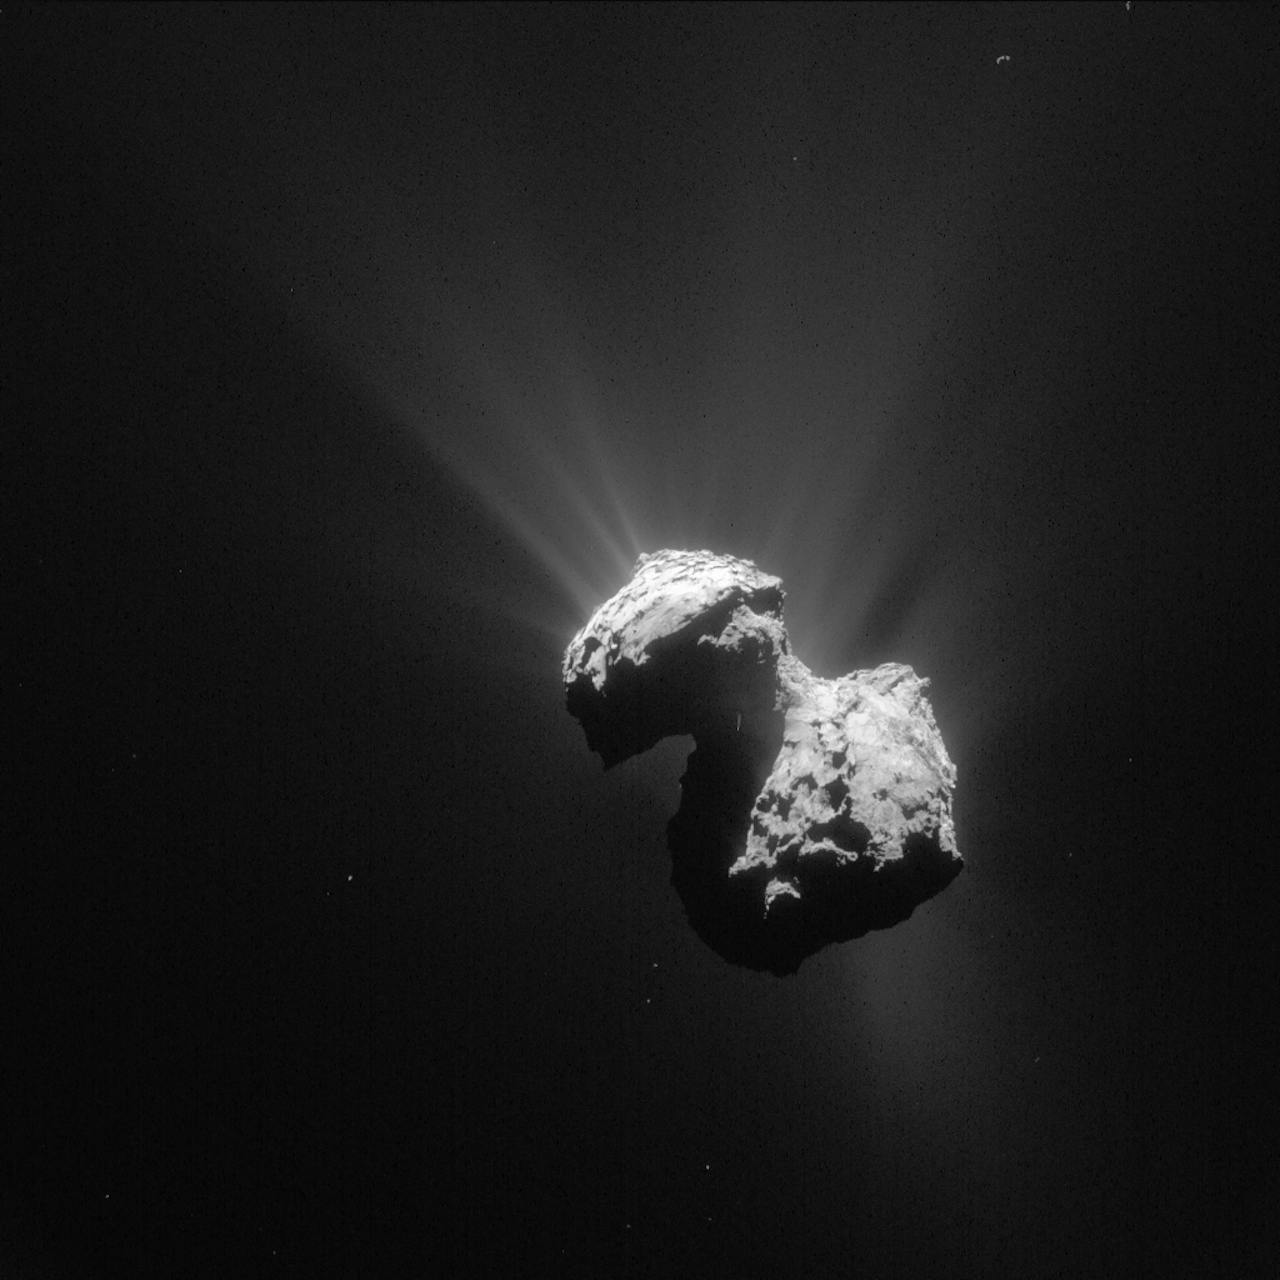 Een komeet van dichtbij gefotografeerd in zwart-wit.